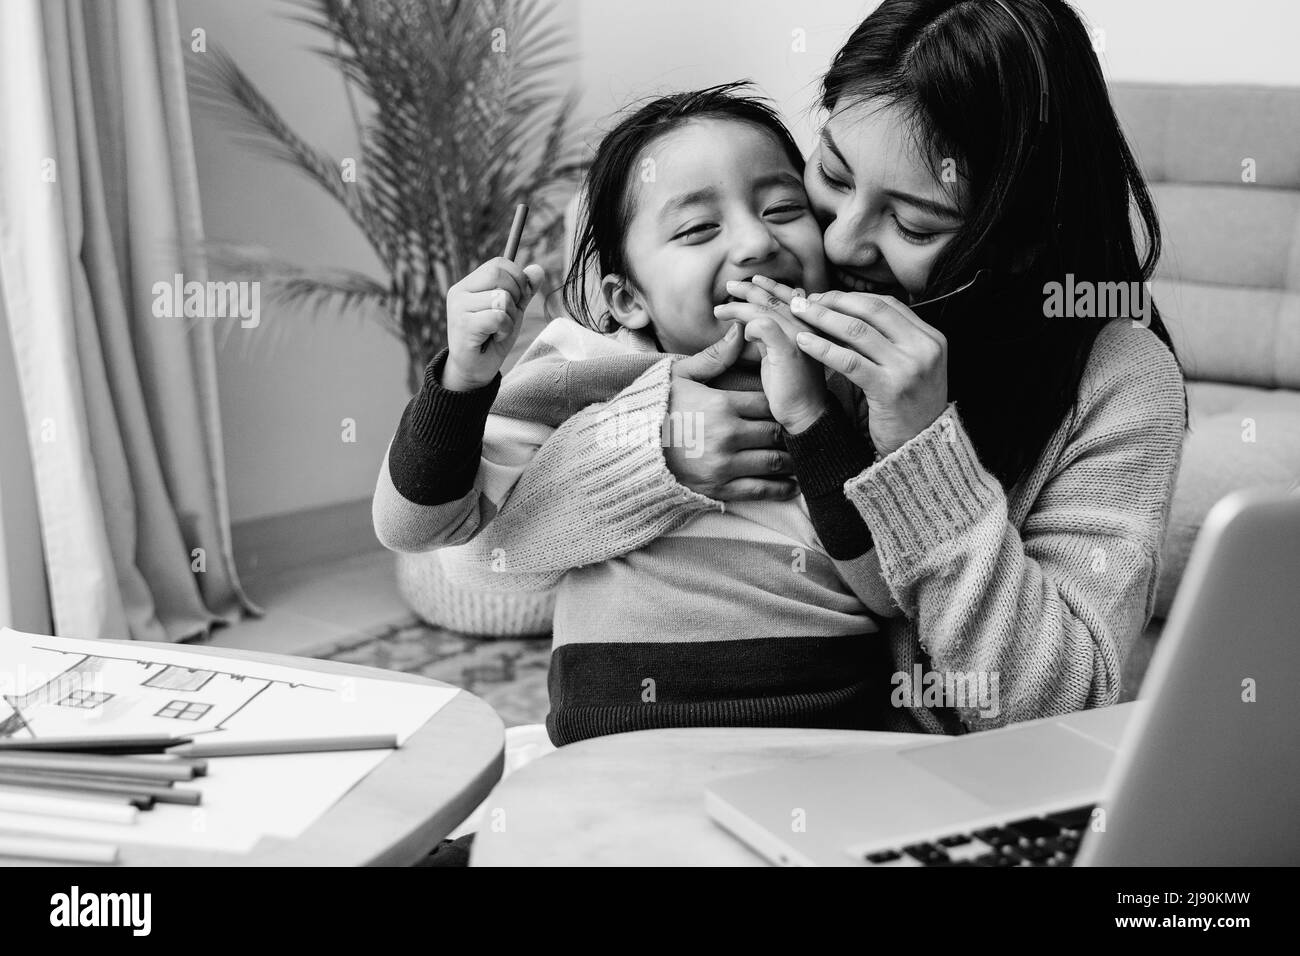 Glückliche lateinamerikanische Mutter und Sohn umarmen sich zu Hause - Familienliebe Konzept - Schwarz-Weiß-Schnitt Stockfoto